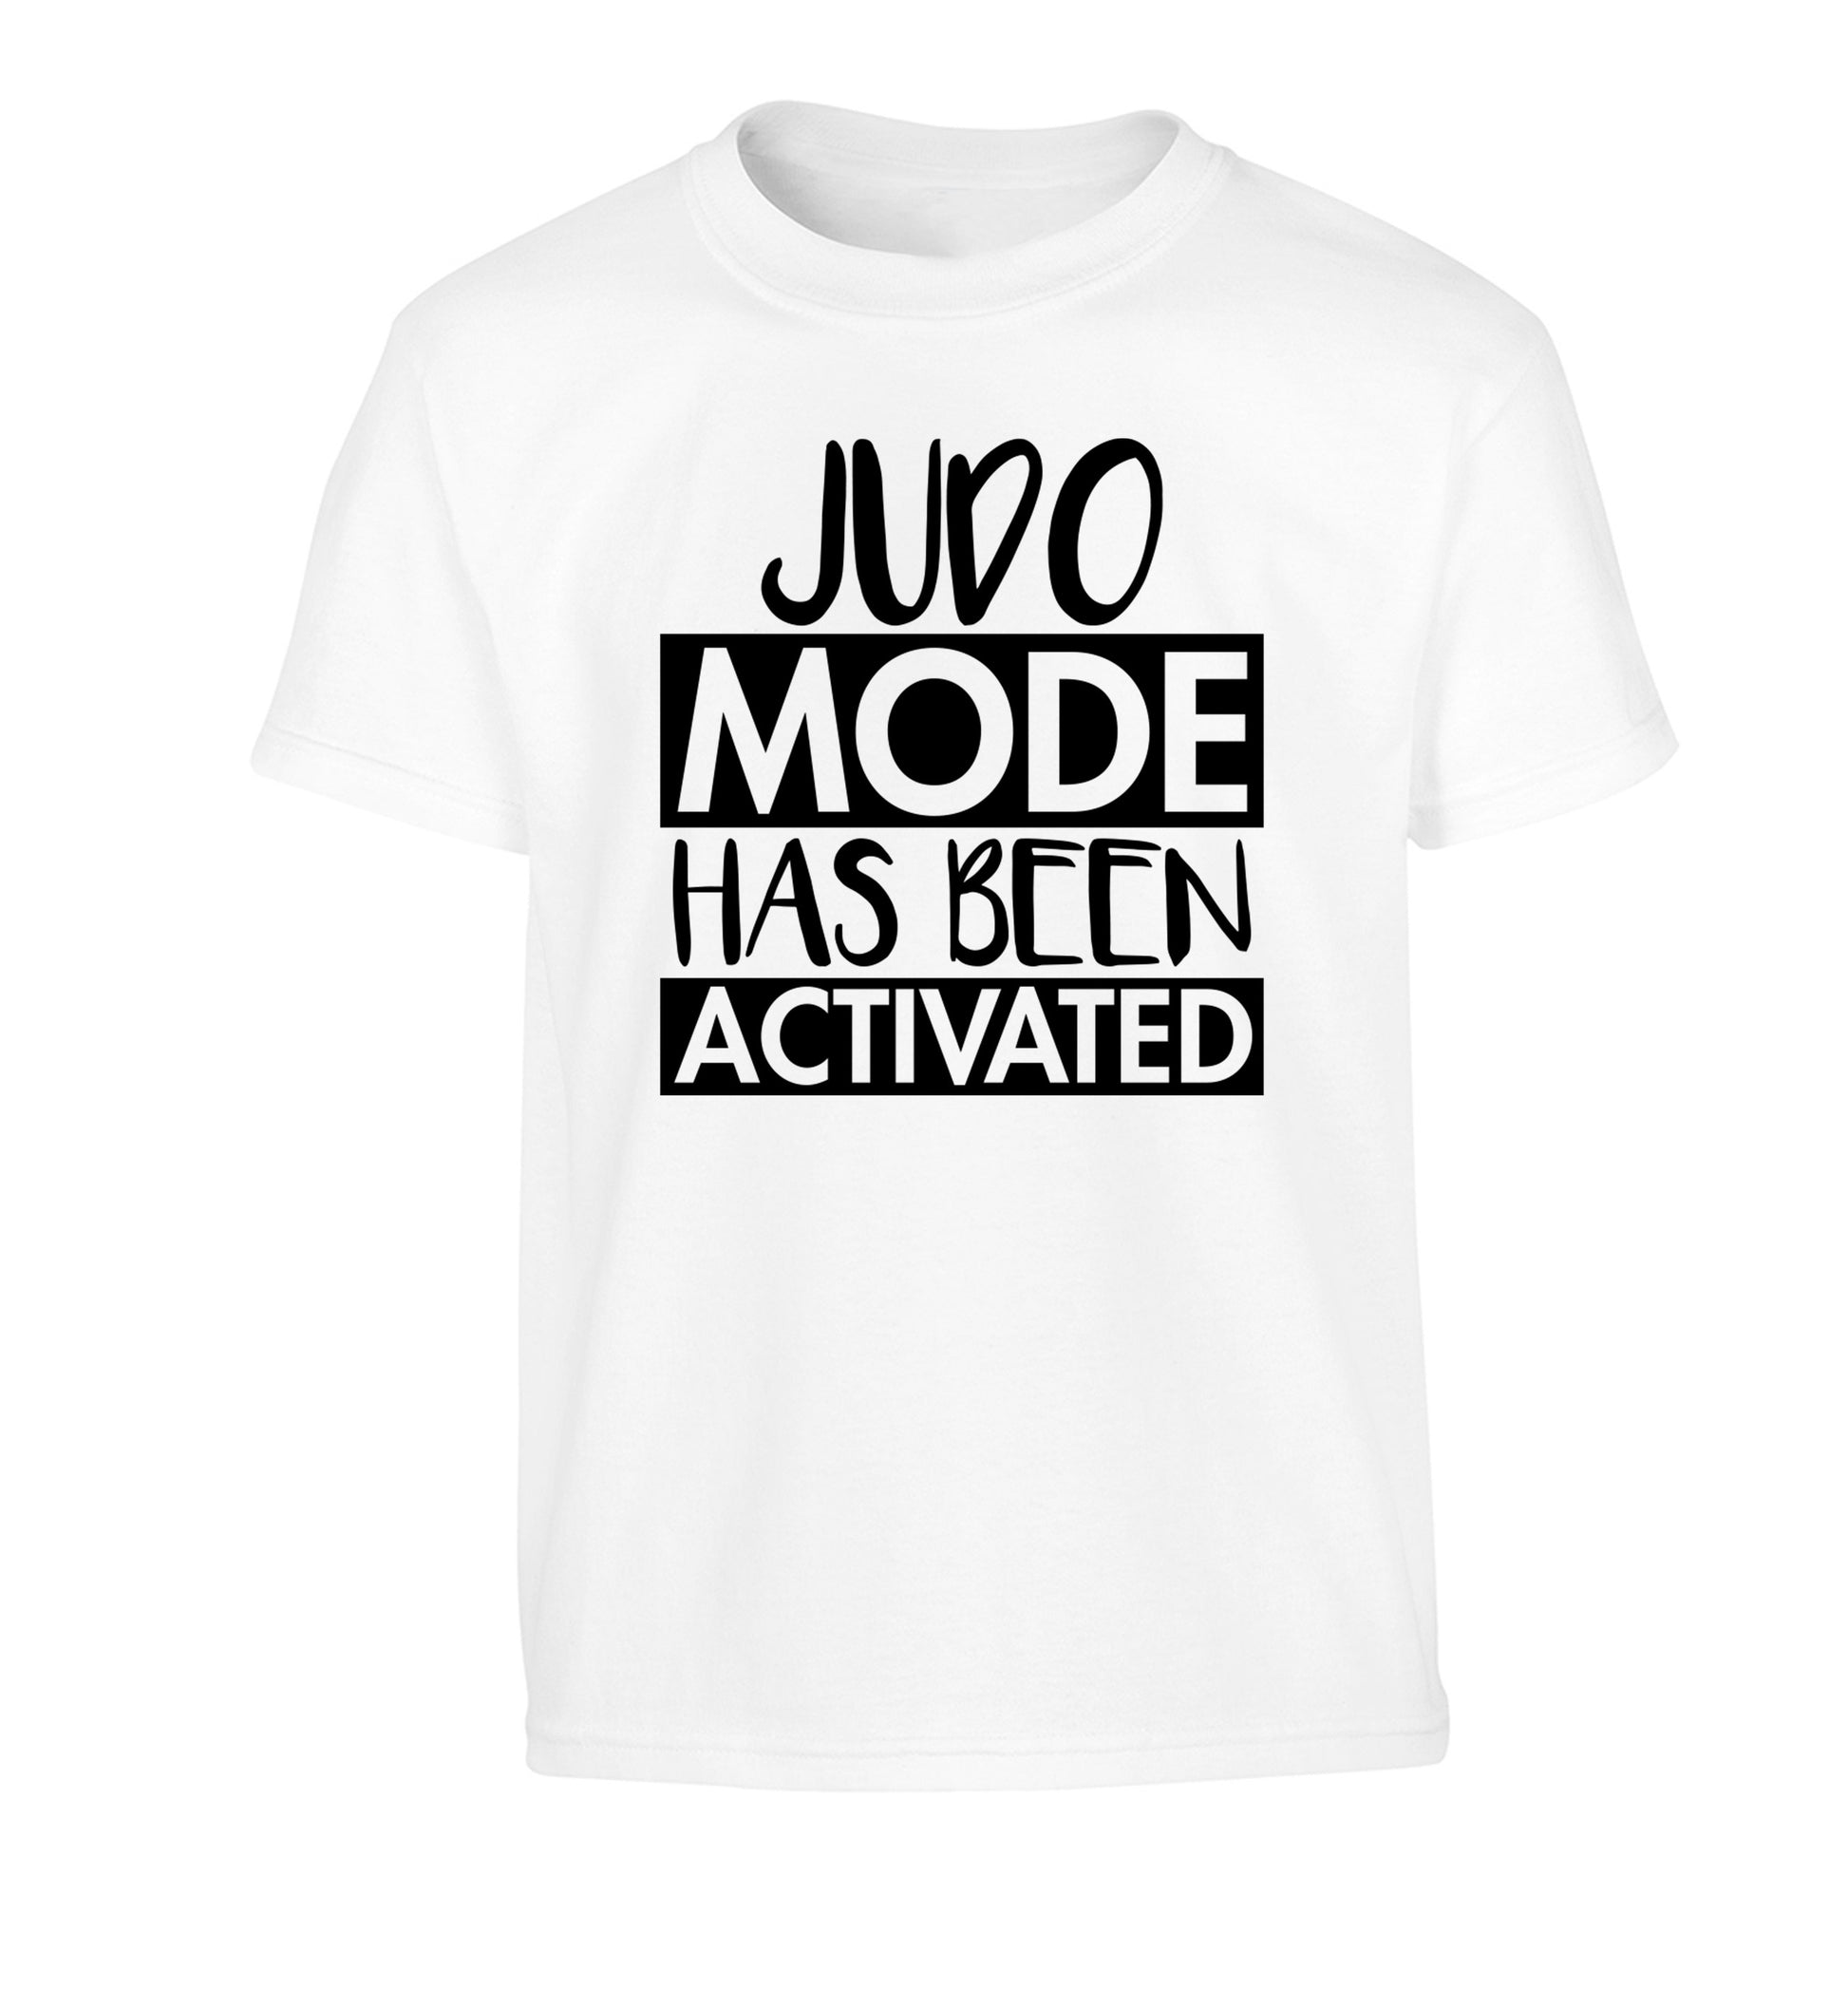 Judo mode activated Children's white Tshirt 12-14 Years